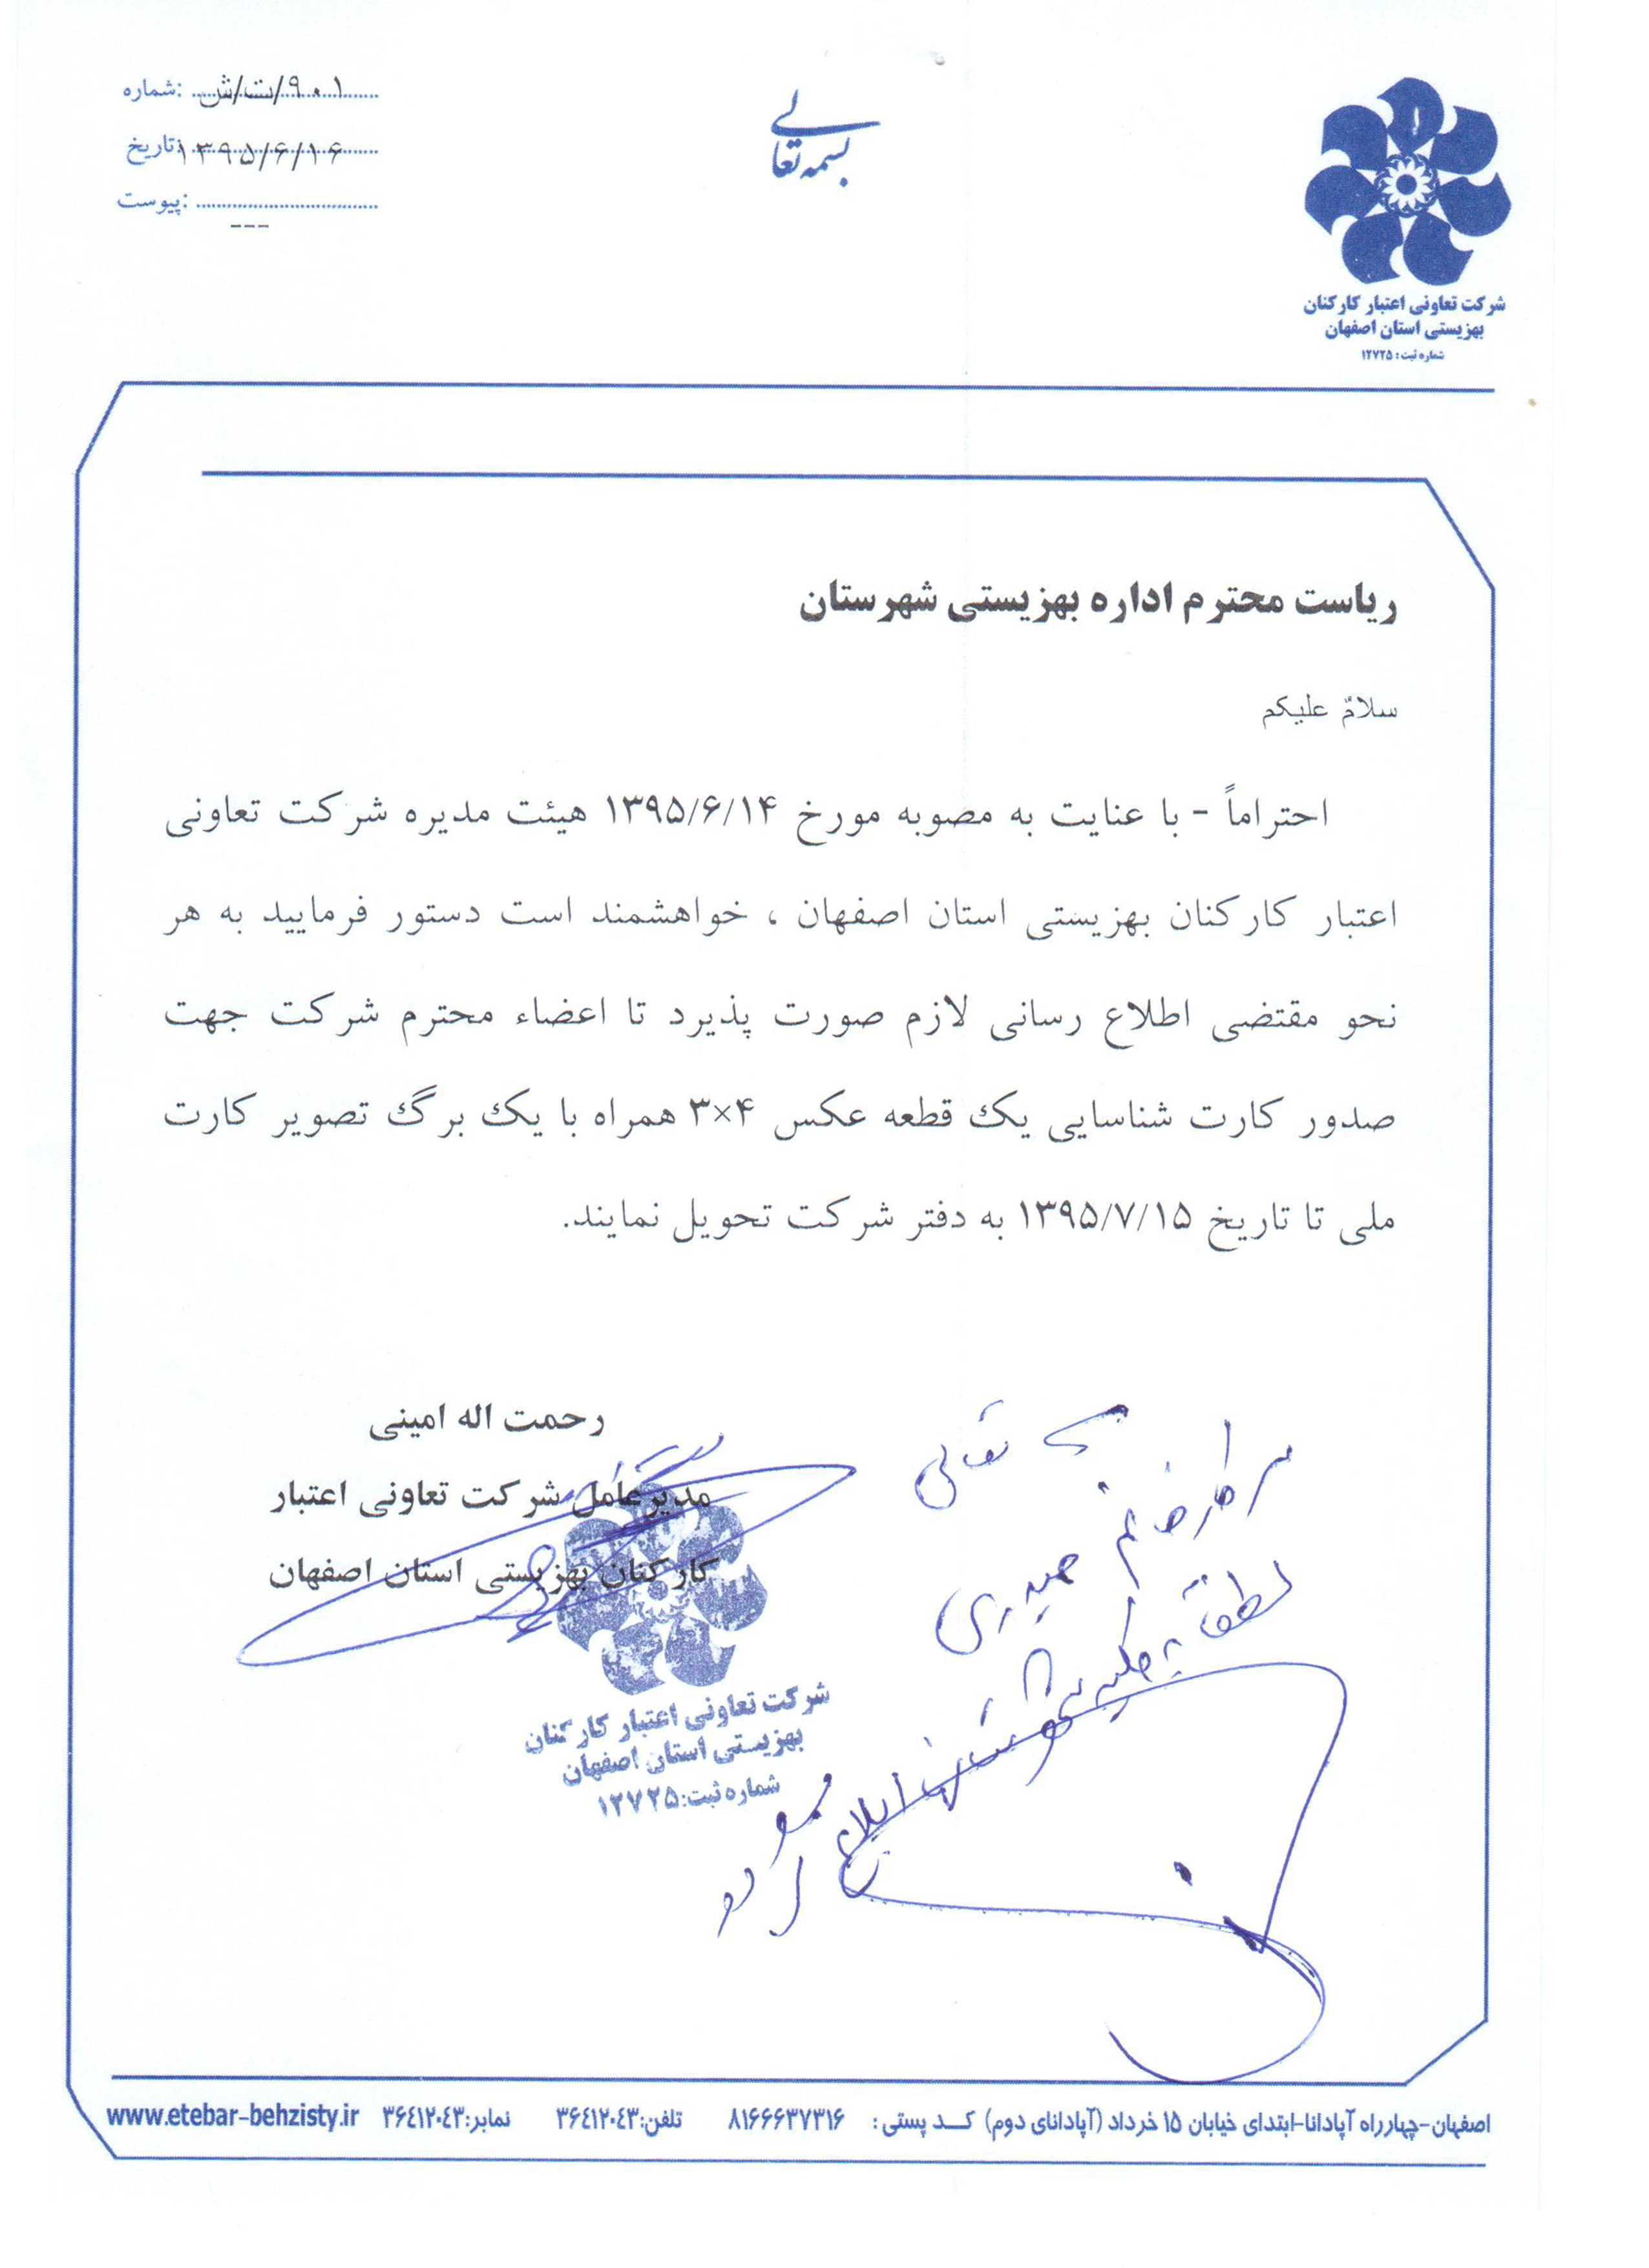 اطلاعیه صدور کارت شناسایی اعضای شرکت تعاونی اعتبار بهزیستی استان اصفهان